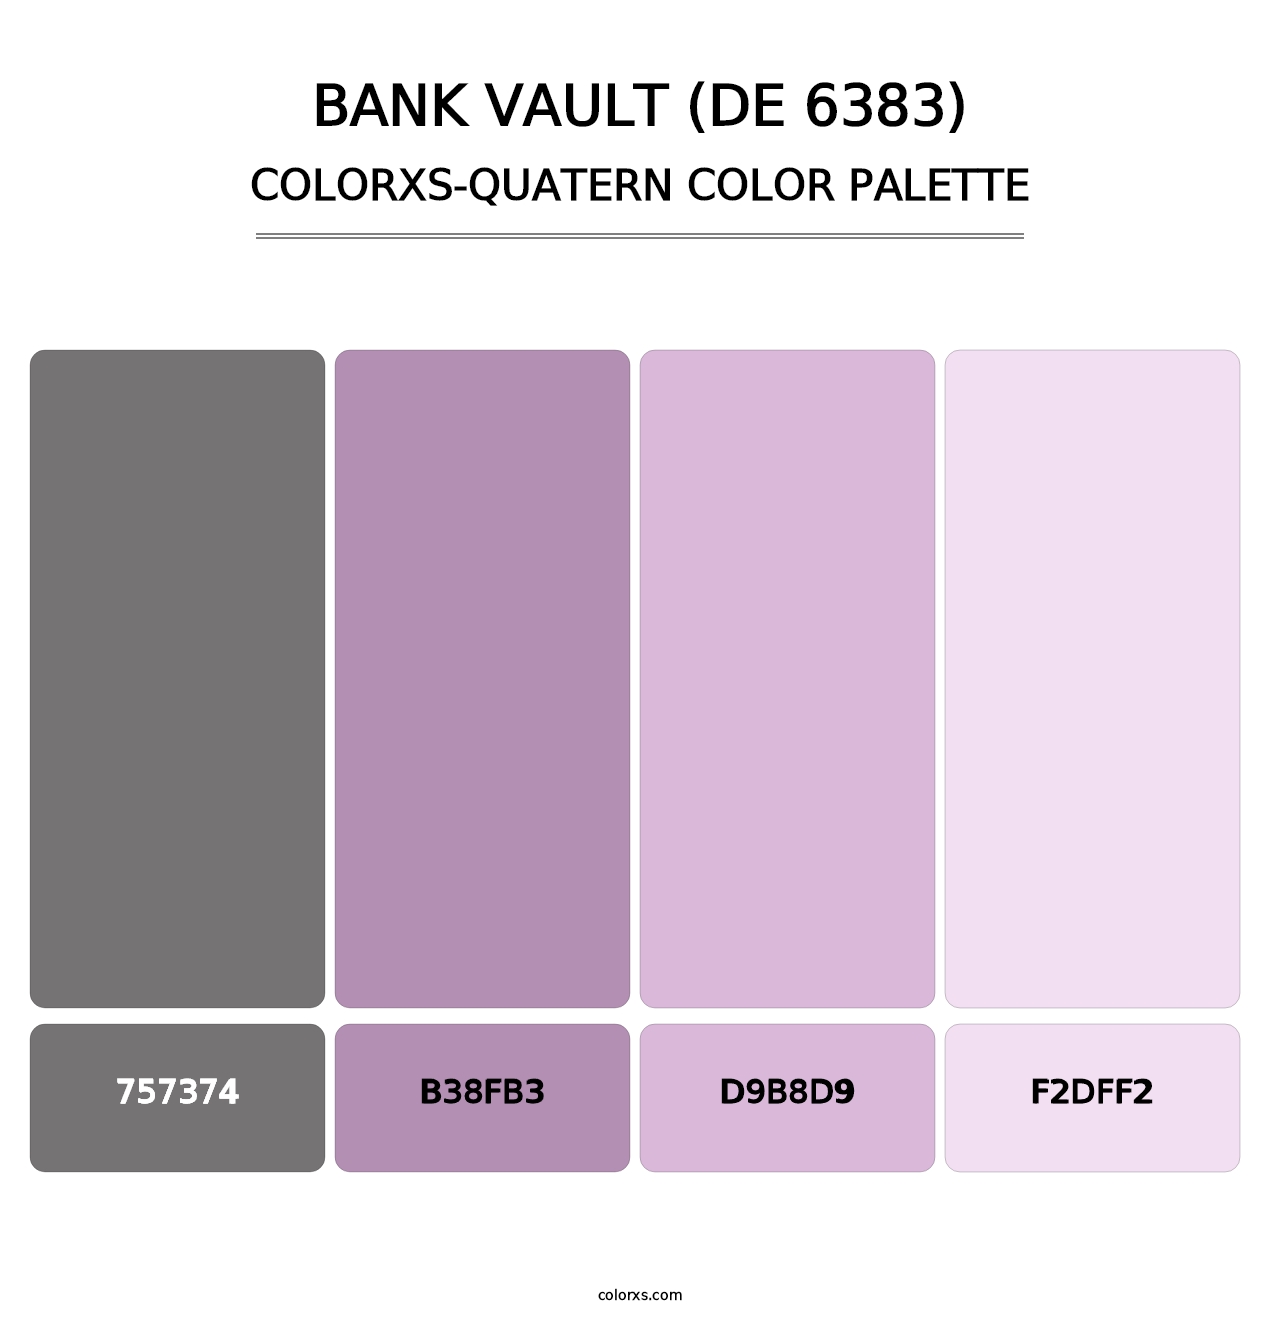 Bank Vault (DE 6383) - Colorxs Quatern Palette